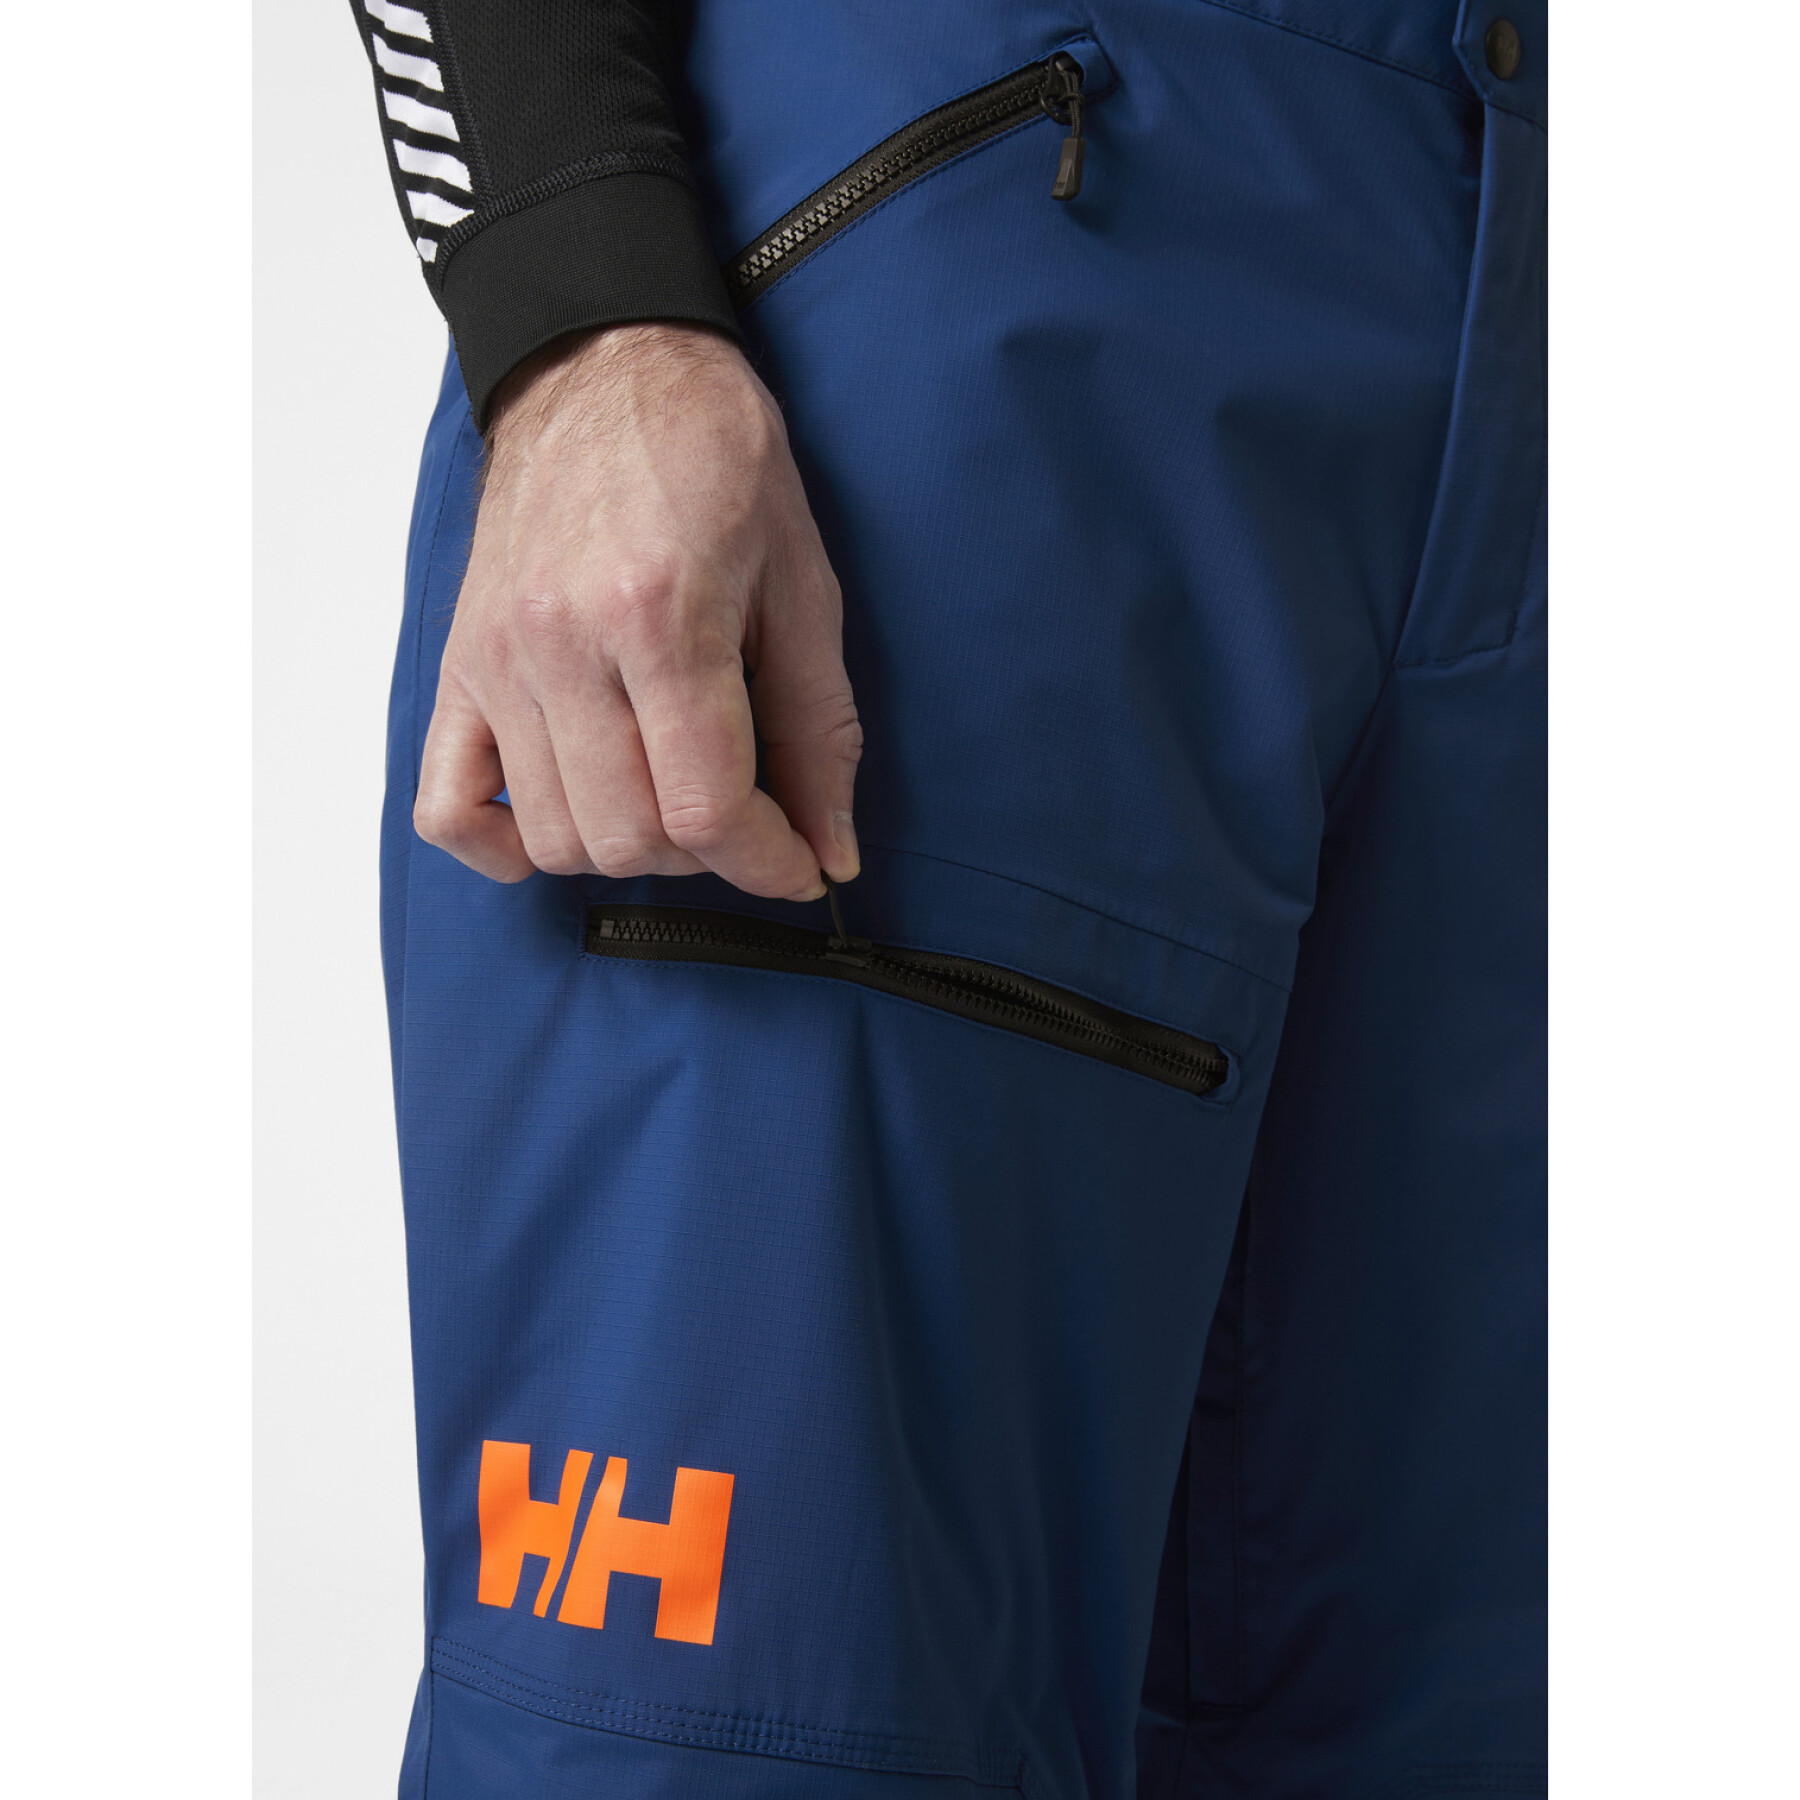 Pantalon de ski cargo Helly Hansen Sogn